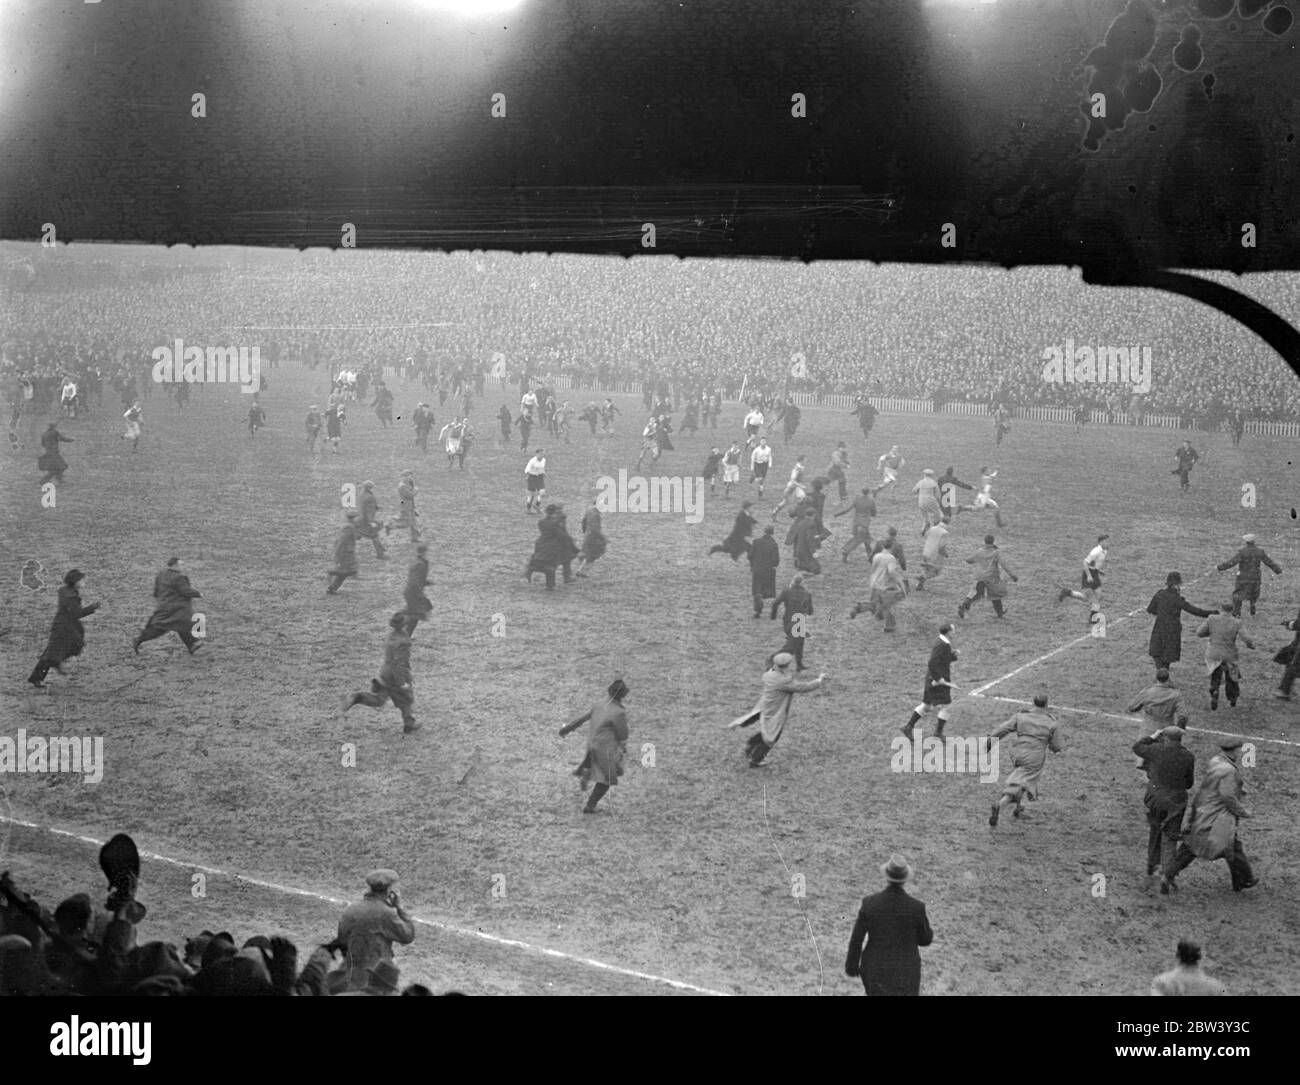 Millwall Spieler fliehen, wie Tausende Feld nach Cup Unentschieden Sieg eindringen. Millwall Spieler mussten vom Spielfeld fliehen, als Tausende ihrer überfreudeten Fans nach dem 2 - 0 Sieg des Teams über Manchester City in der sechsten Runde des F A Cup in "The Den", New Cross auf das Feld aufstiegen. Bald war das ganze Feld mit Tausenden von Menschen eingeklemmt. Foto zeigt, Millwall Spieler werden über den Platz von ihren begeisterten Bewunderern nach dem Spiel gejagt. März 1937 Stockfoto